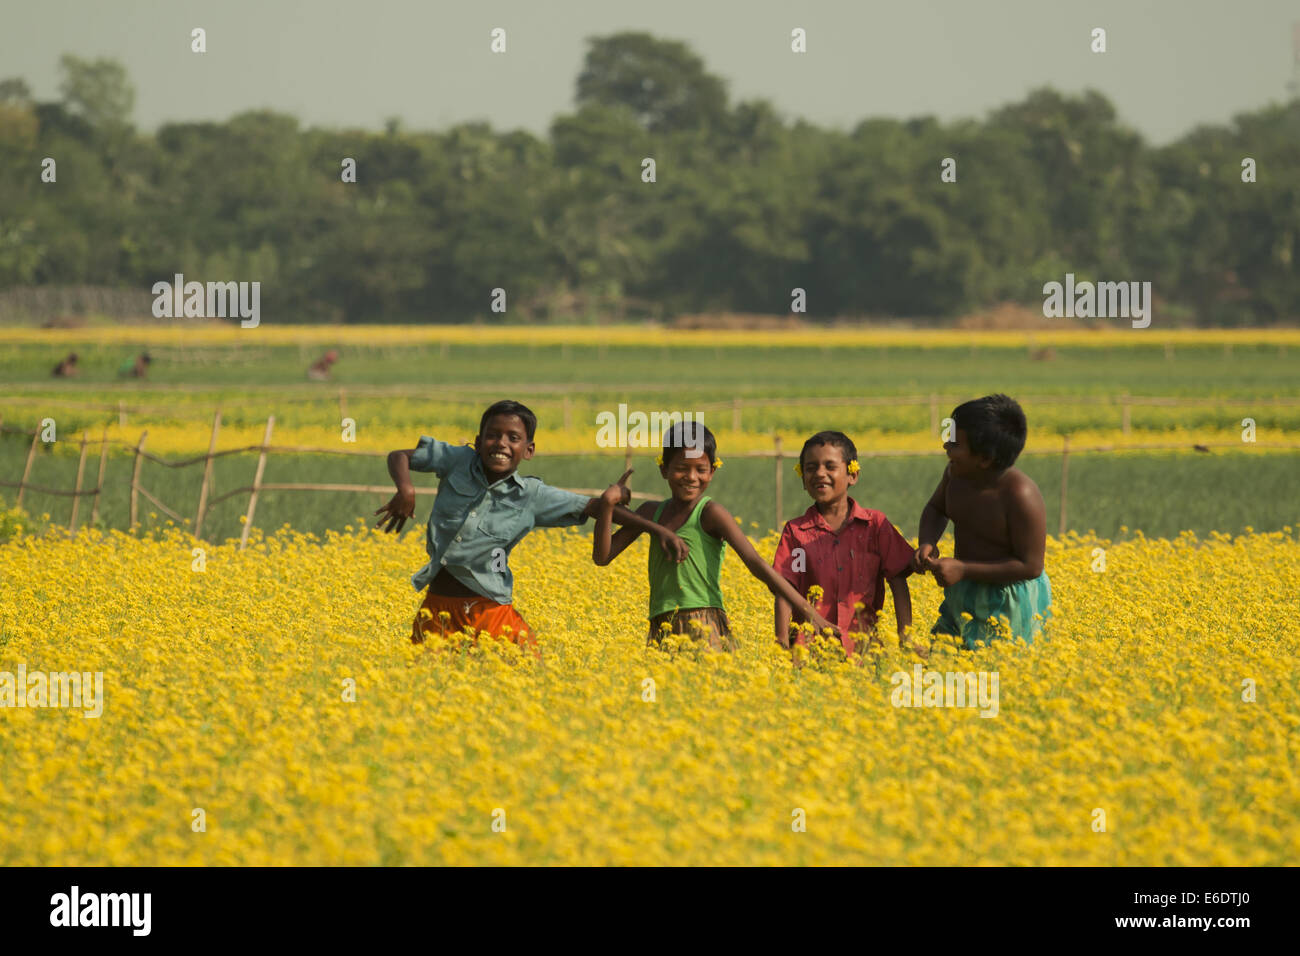 Nov. 22, 2011 - Bangladesh - campo di senape in Bangladesh.la senape è un tempo fresco e raccolto è cresciuto da semi seminati in primavera. Da metà dicembre fino alla fine di gennaio, Bangladesh gli agricoltori coltivano i loro raccolti di vivacemente colorato di giallo senape fiori che sono in piena fioritura. (Credito Immagine: © Zakir Hossain Chowdhury/ZUMA filo) Foto Stock